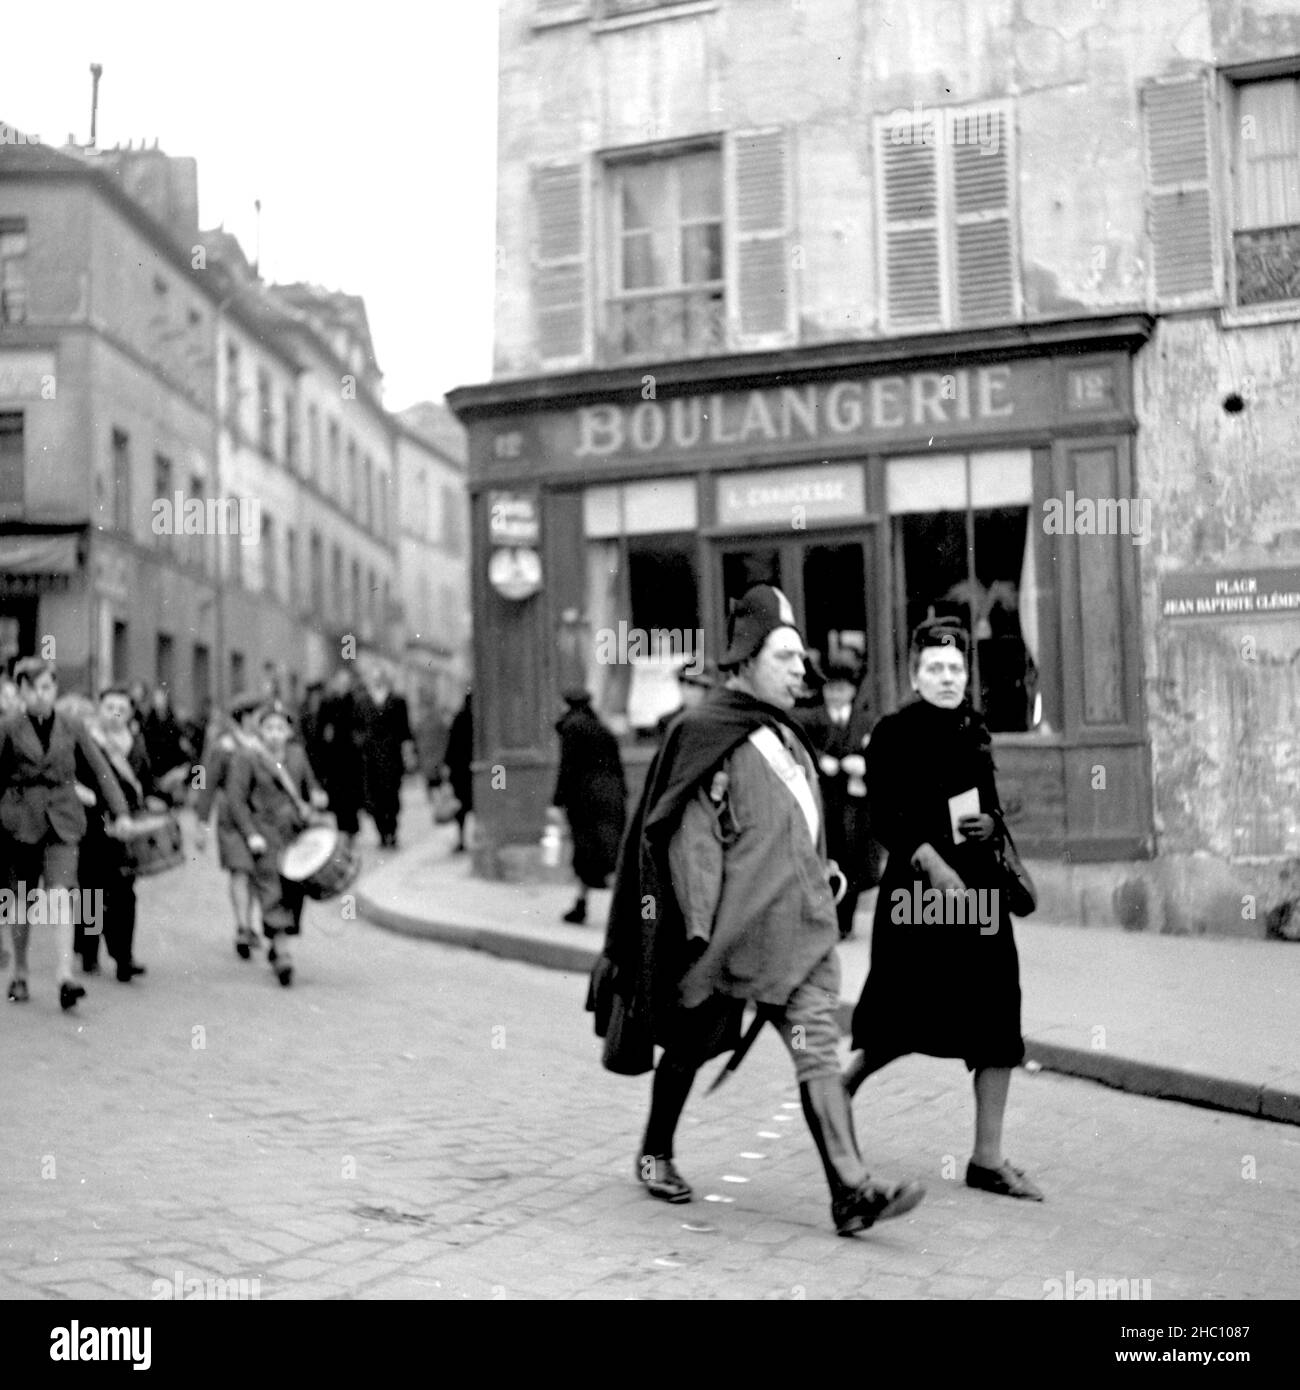 Una processione nel 1945 a Parigi Montmartre proviene dalla direzione di Sacre-Cœur camminando lungo Rue Norvins e girando a sinistra in Place Jean-Baptiste Clement. Guidare è un uomo anziano che indossa un cappello Napoleone, un mantello, e stivali da equitazione. Sigaro in bocca, una spada pende sul suo lato sinistro. Sembra aver perso il braccio destro. Dietro di lui in marcia c'è un gruppo di ragazzi che battono i tamburi. Una Marina degli Stati Uniti ha arruolato l'uomo orologi da un lato e Una donna orologi e poi si unisce alla parte anteriore del gruppo. Il Consolat d’Auvergne e il Ristorante l’Ambassade e i caffè Gilbert sono in vista Foto Stock